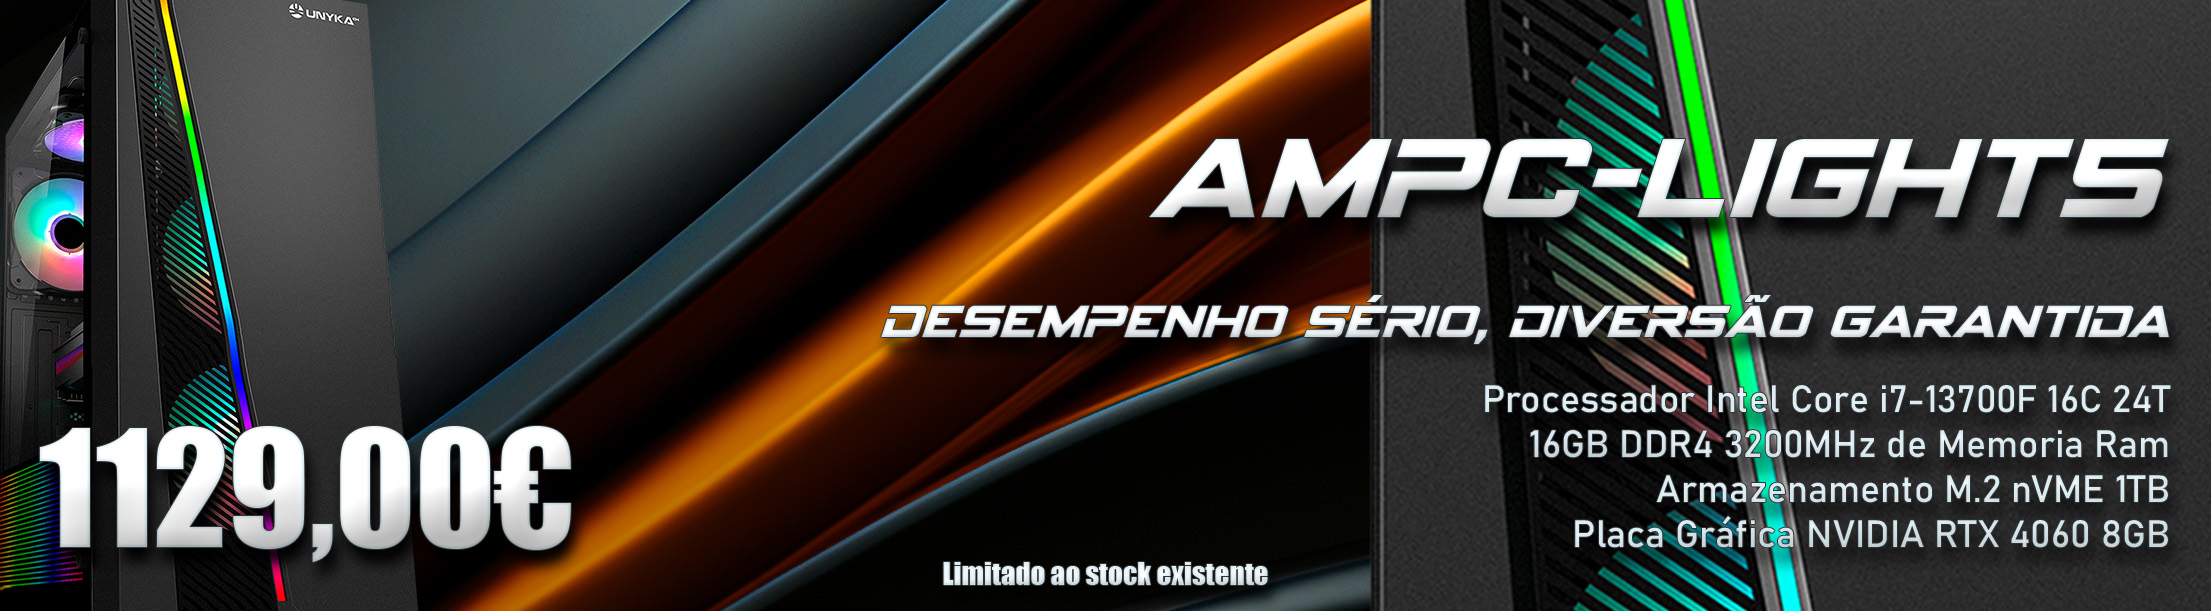 AMPC-LITE5-INTEL CORE I7 13700F NVIDIA RTX 4060 8GB